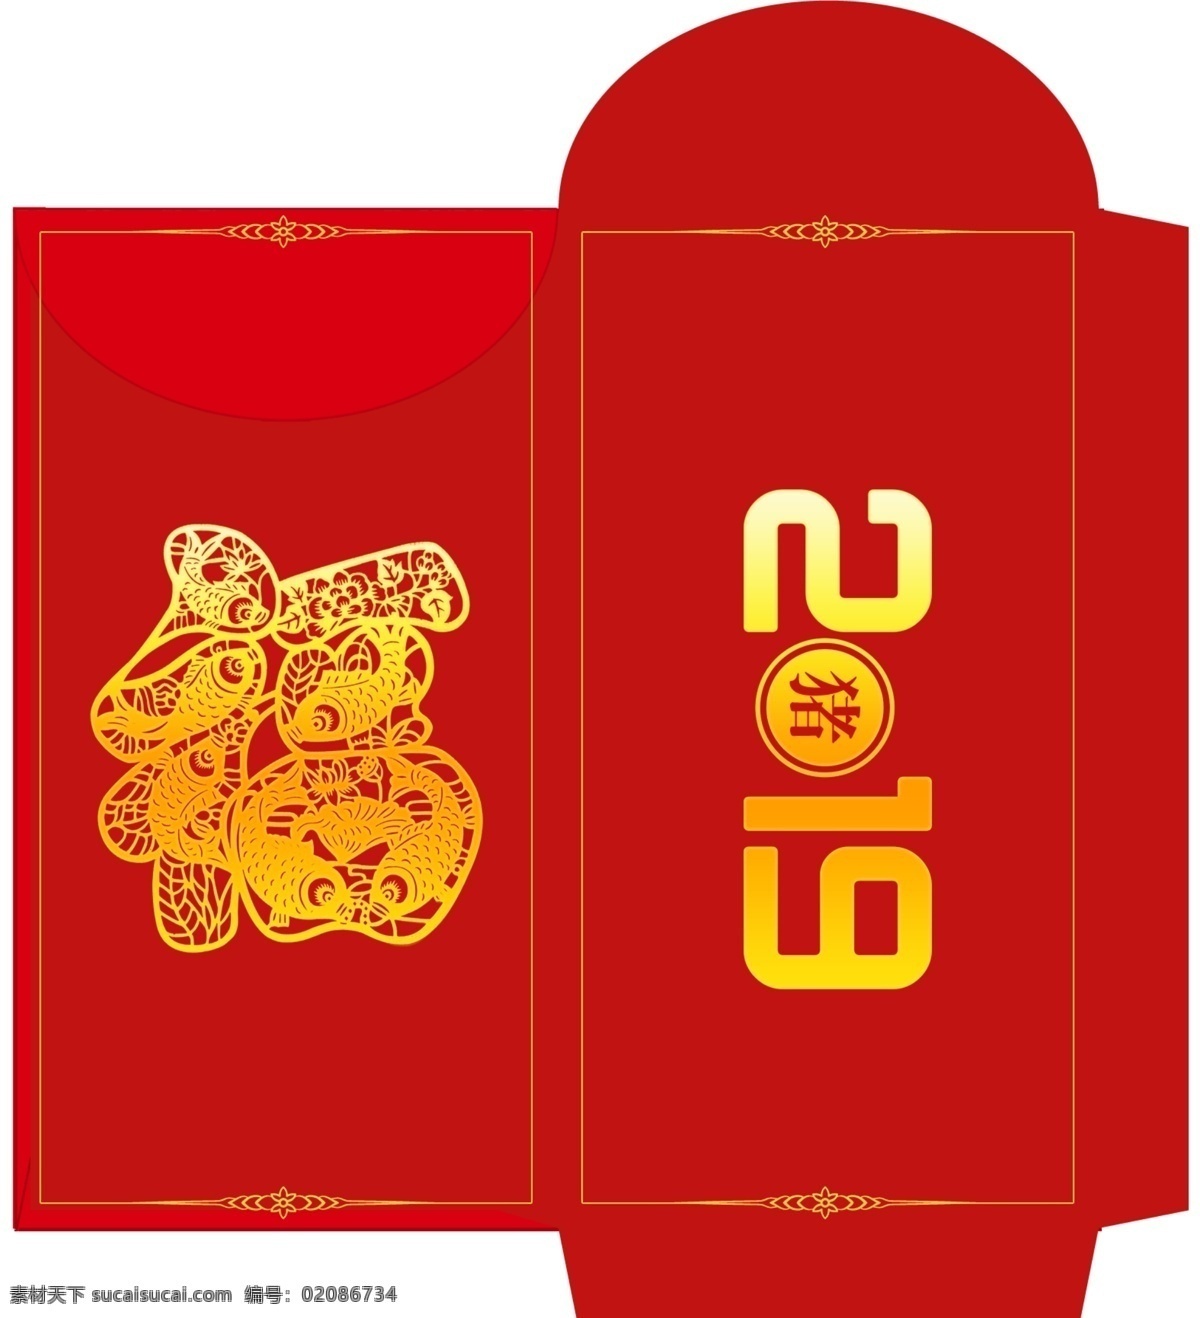 2019 年 创意 猪年 红包 模板 psd素材 创意设计 免费素材 平面素材 平面模板 红包设计 红包模板 模板设计